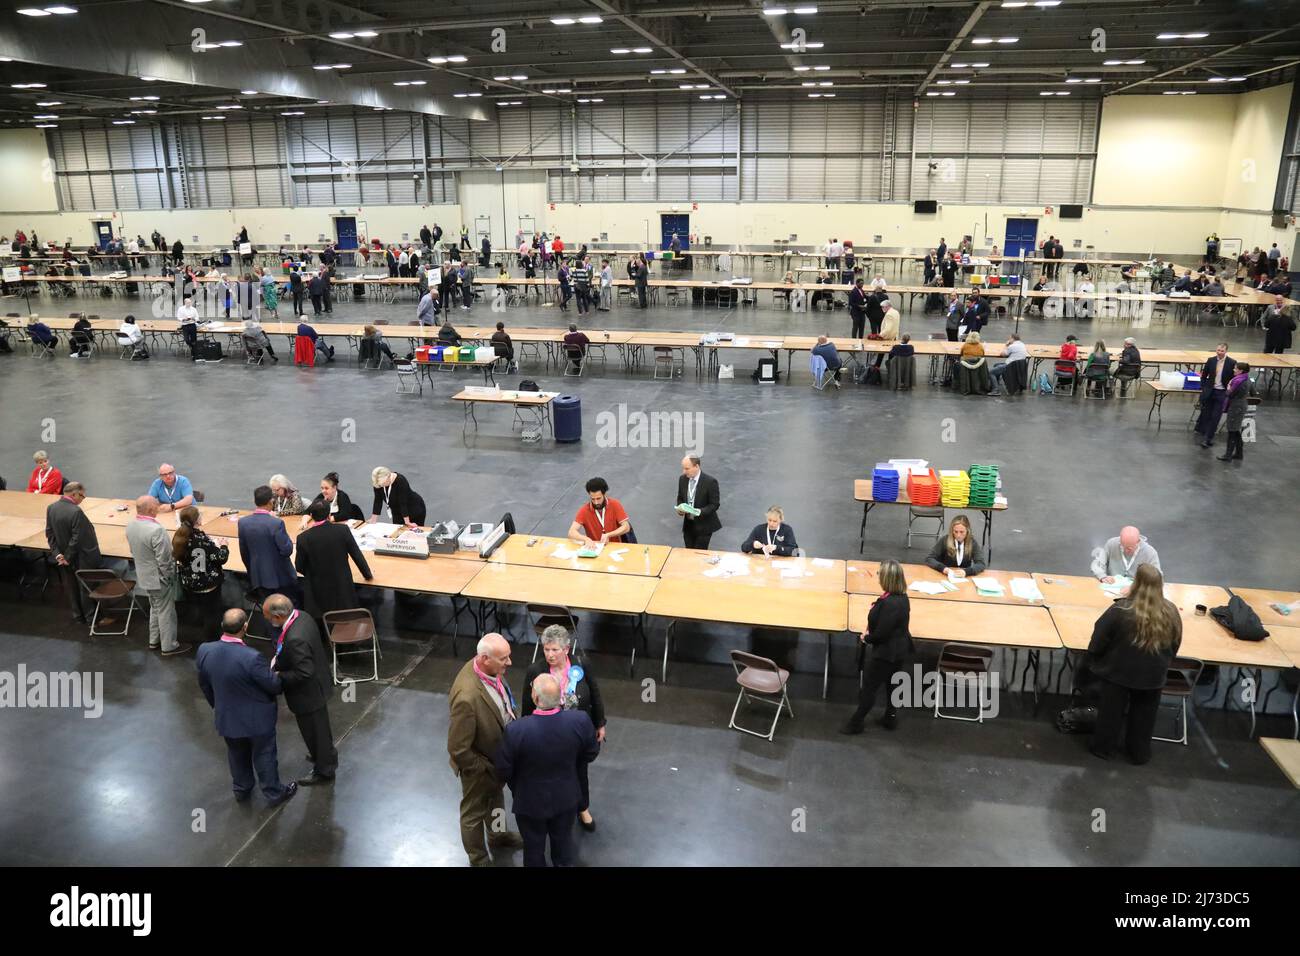 Volontari per le elezioni alla Peterborough Arena, in quanto il conteggio inizia in tutto il Regno Unito per le elezioni del governo locale. Data immagine: Giovedì 5 maggio 2022. Foto Stock